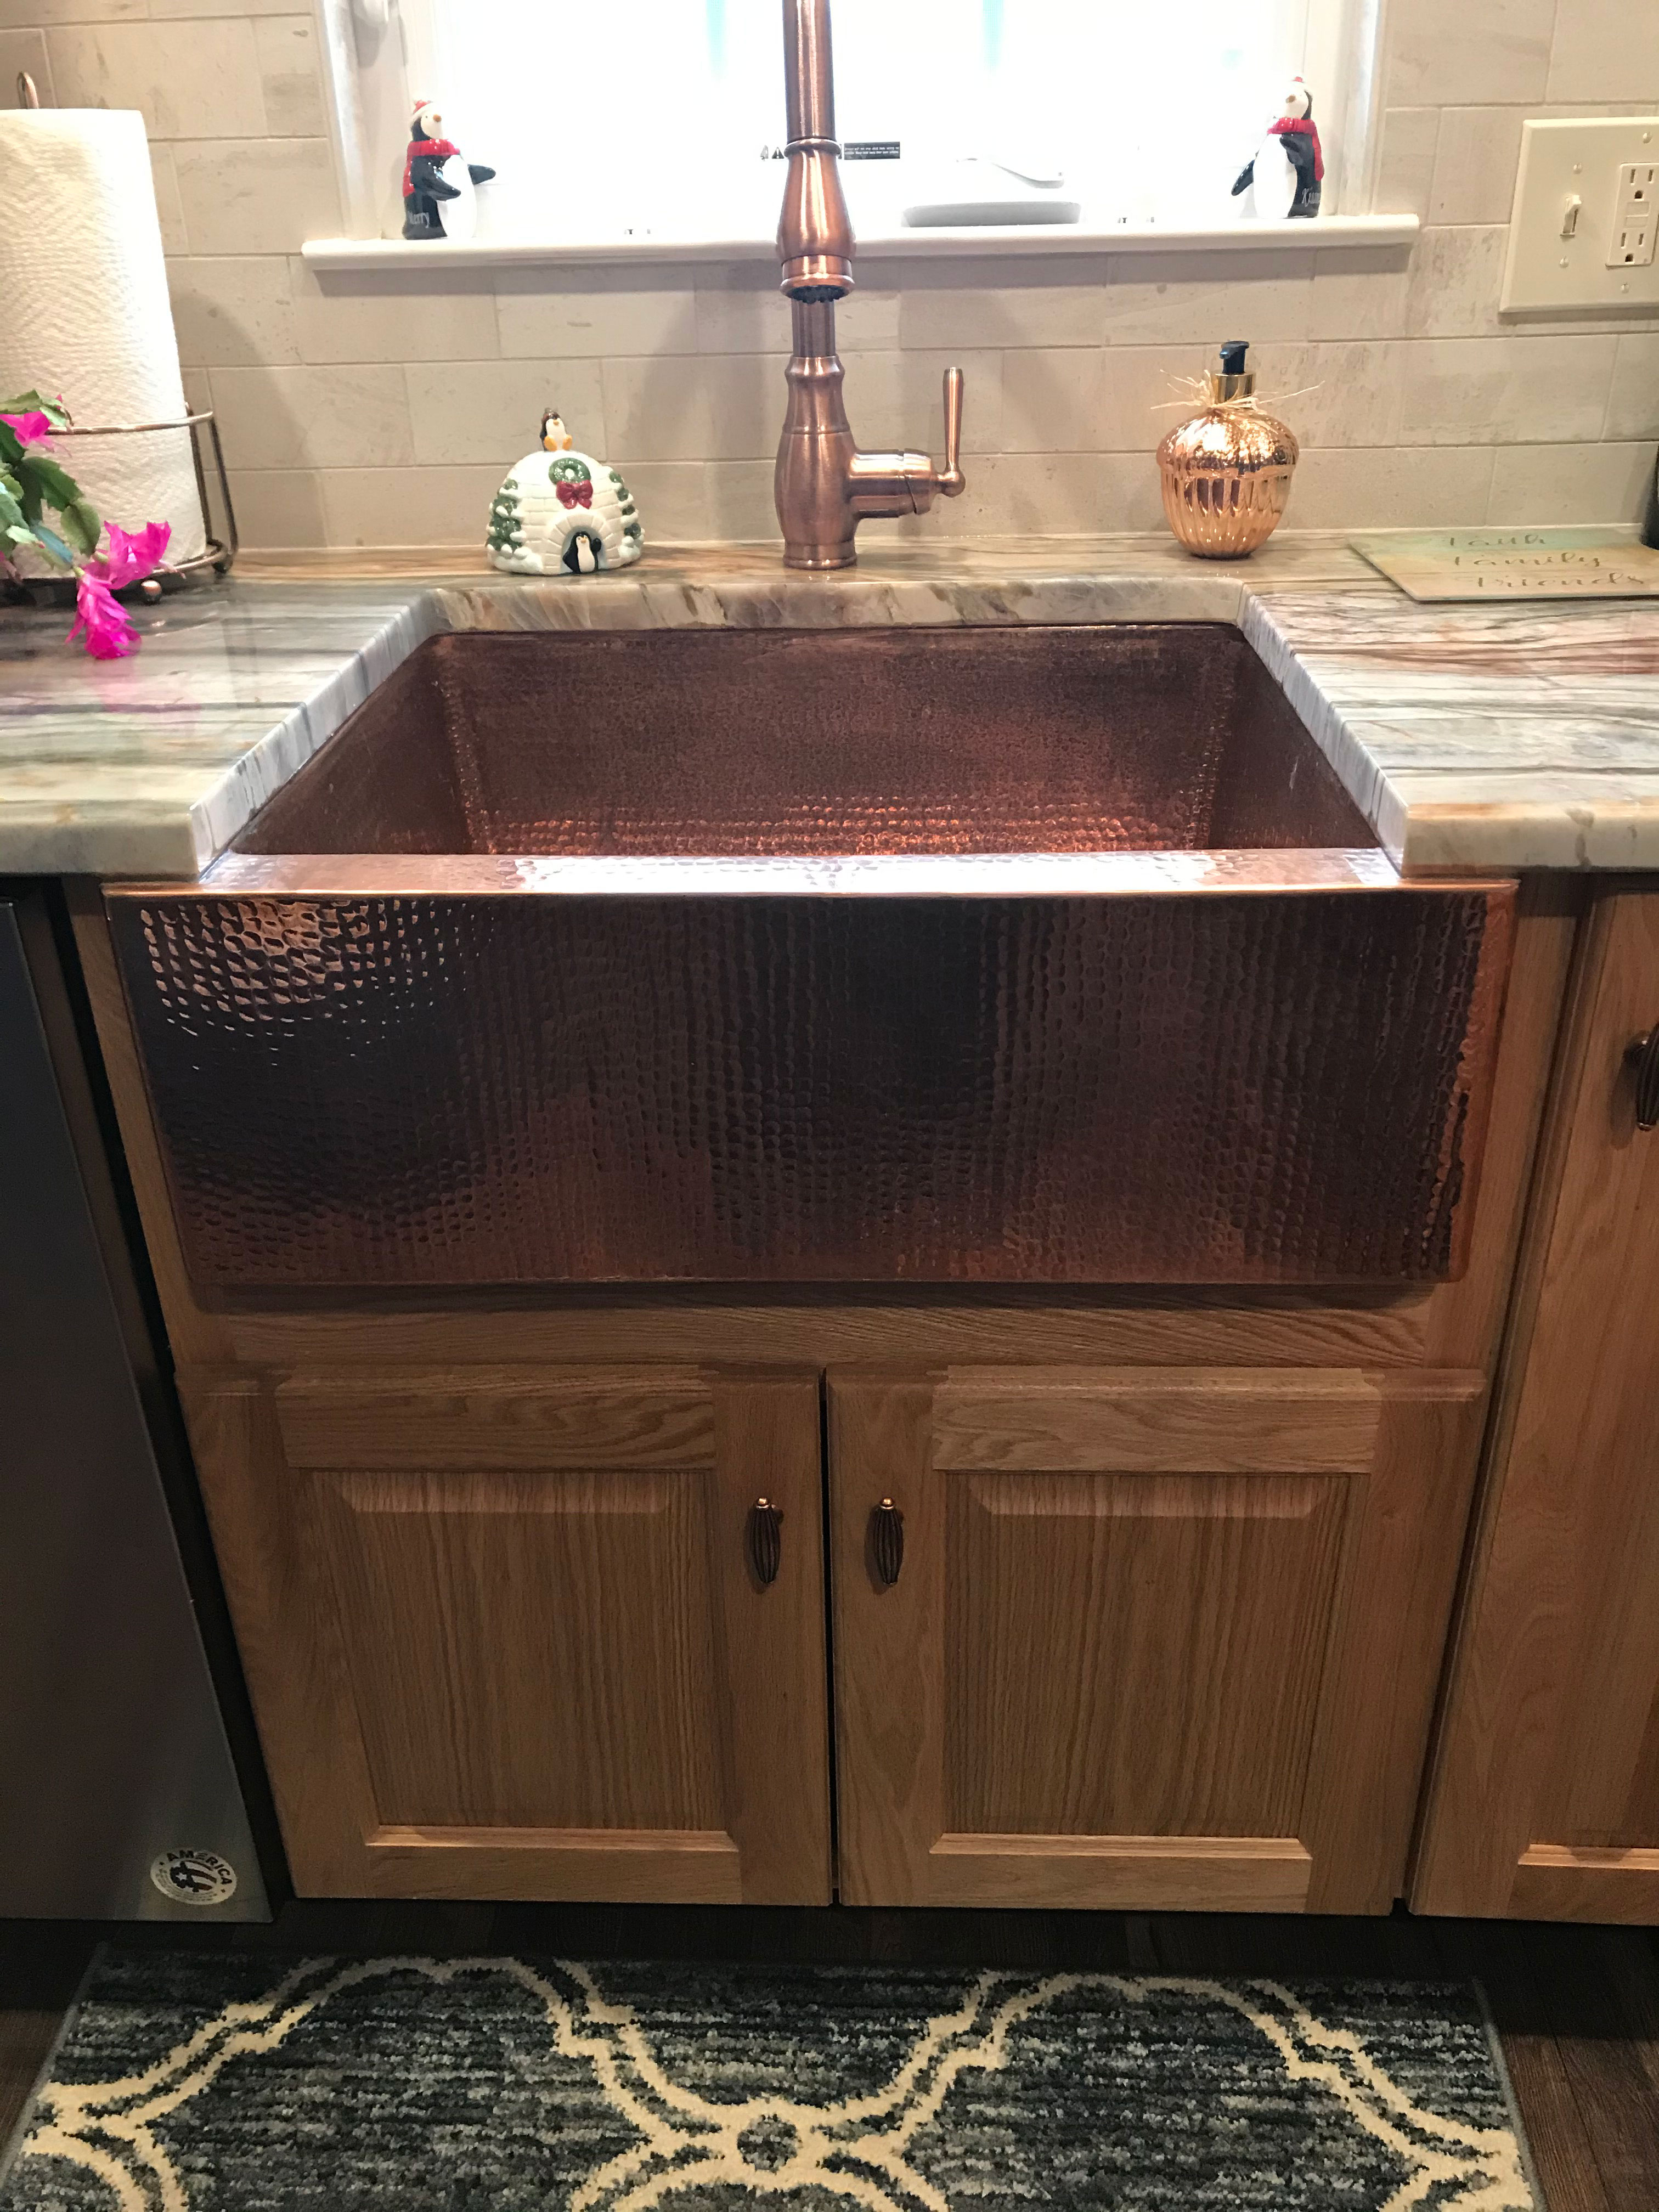 Kitchen design idea sink design idea features wood kitchen cabinets, white kitchen countertops and brick backsplash